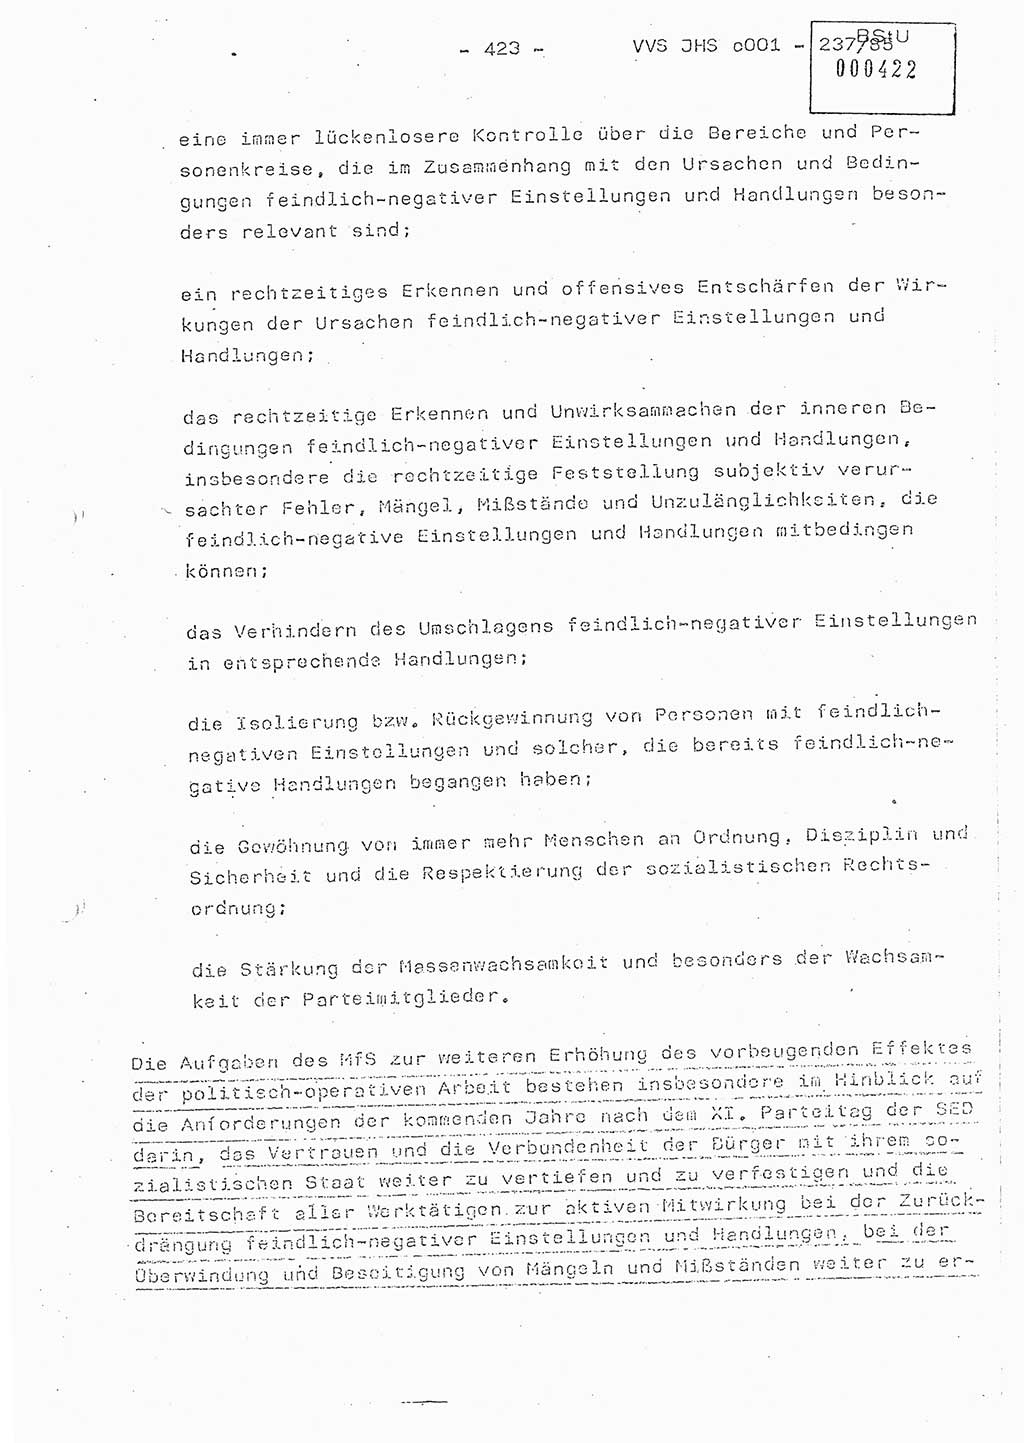 Dissertation Oberstleutnant Peter Jakulski (JHS), Oberstleutnat Christian Rudolph (HA Ⅸ), Major Horst Böttger (ZMD), Major Wolfgang Grüneberg (JHS), Major Albert Meutsch (JHS), Ministerium für Staatssicherheit (MfS) [Deutsche Demokratische Republik (DDR)], Juristische Hochschule (JHS), Vertrauliche Verschlußsache (VVS) o001-237/85, Potsdam 1985, Seite 423 (Diss. MfS DDR JHS VVS o001-237/85 1985, S. 423)